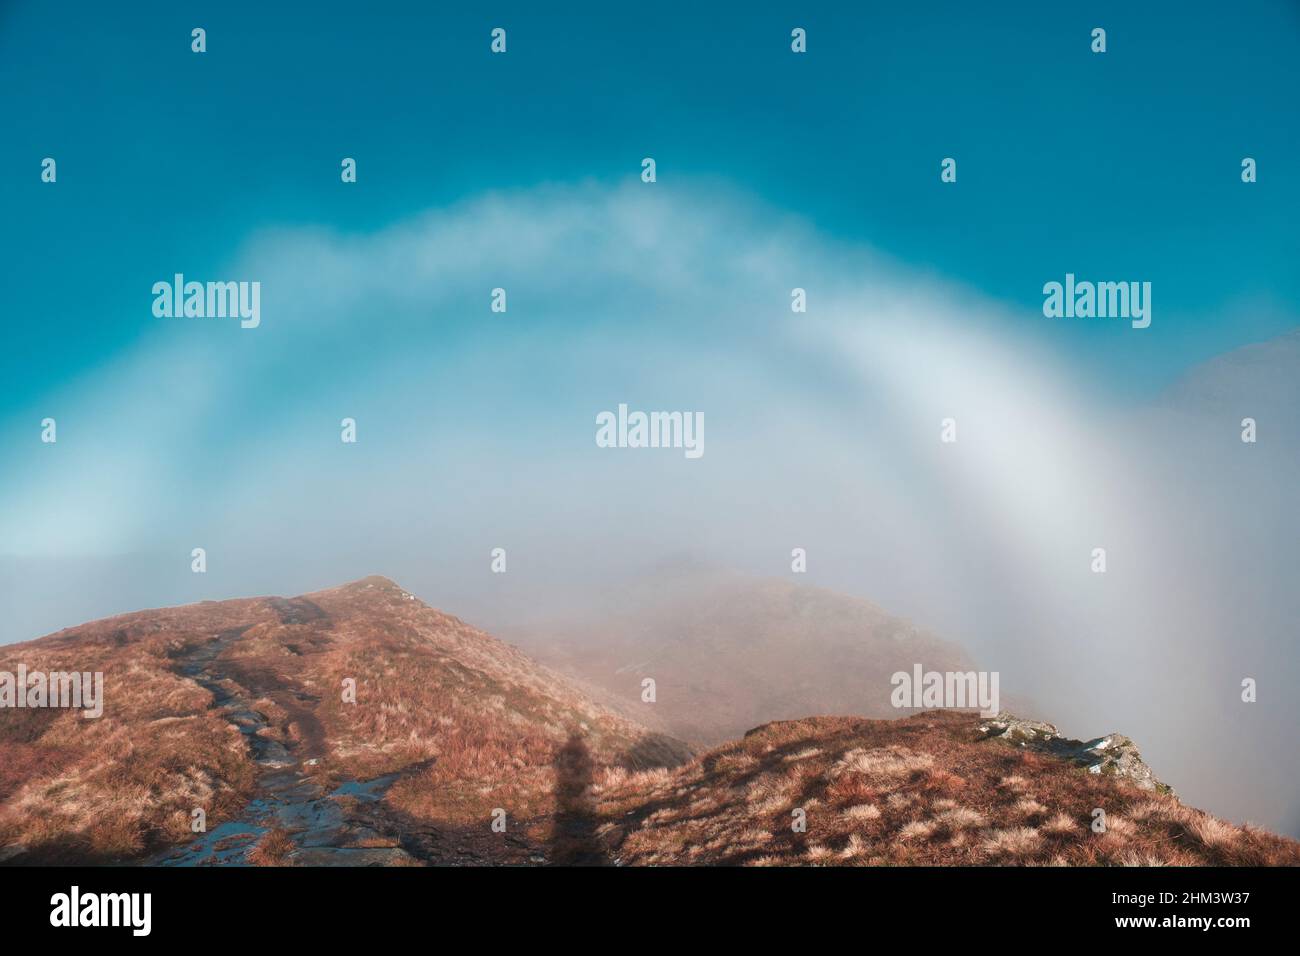 Weißer regenbogen -Fotos und -Bildmaterial in hoher Auflösung – Alamy